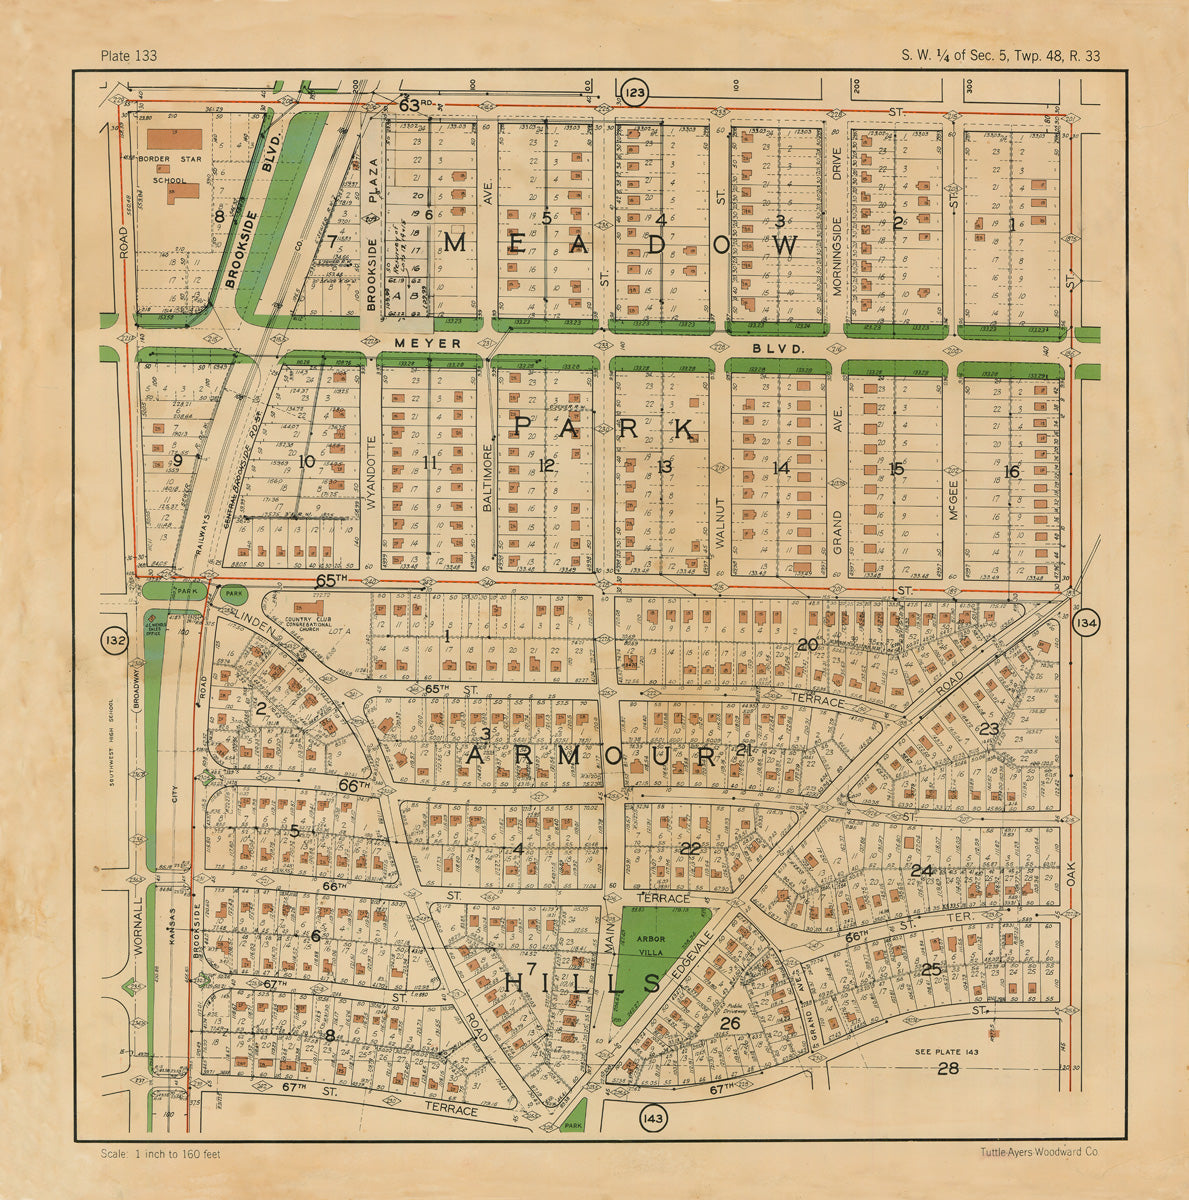 Kansas City 1925 Neighborhood Map - Plate #133 63rd-67th Wornall-Oak